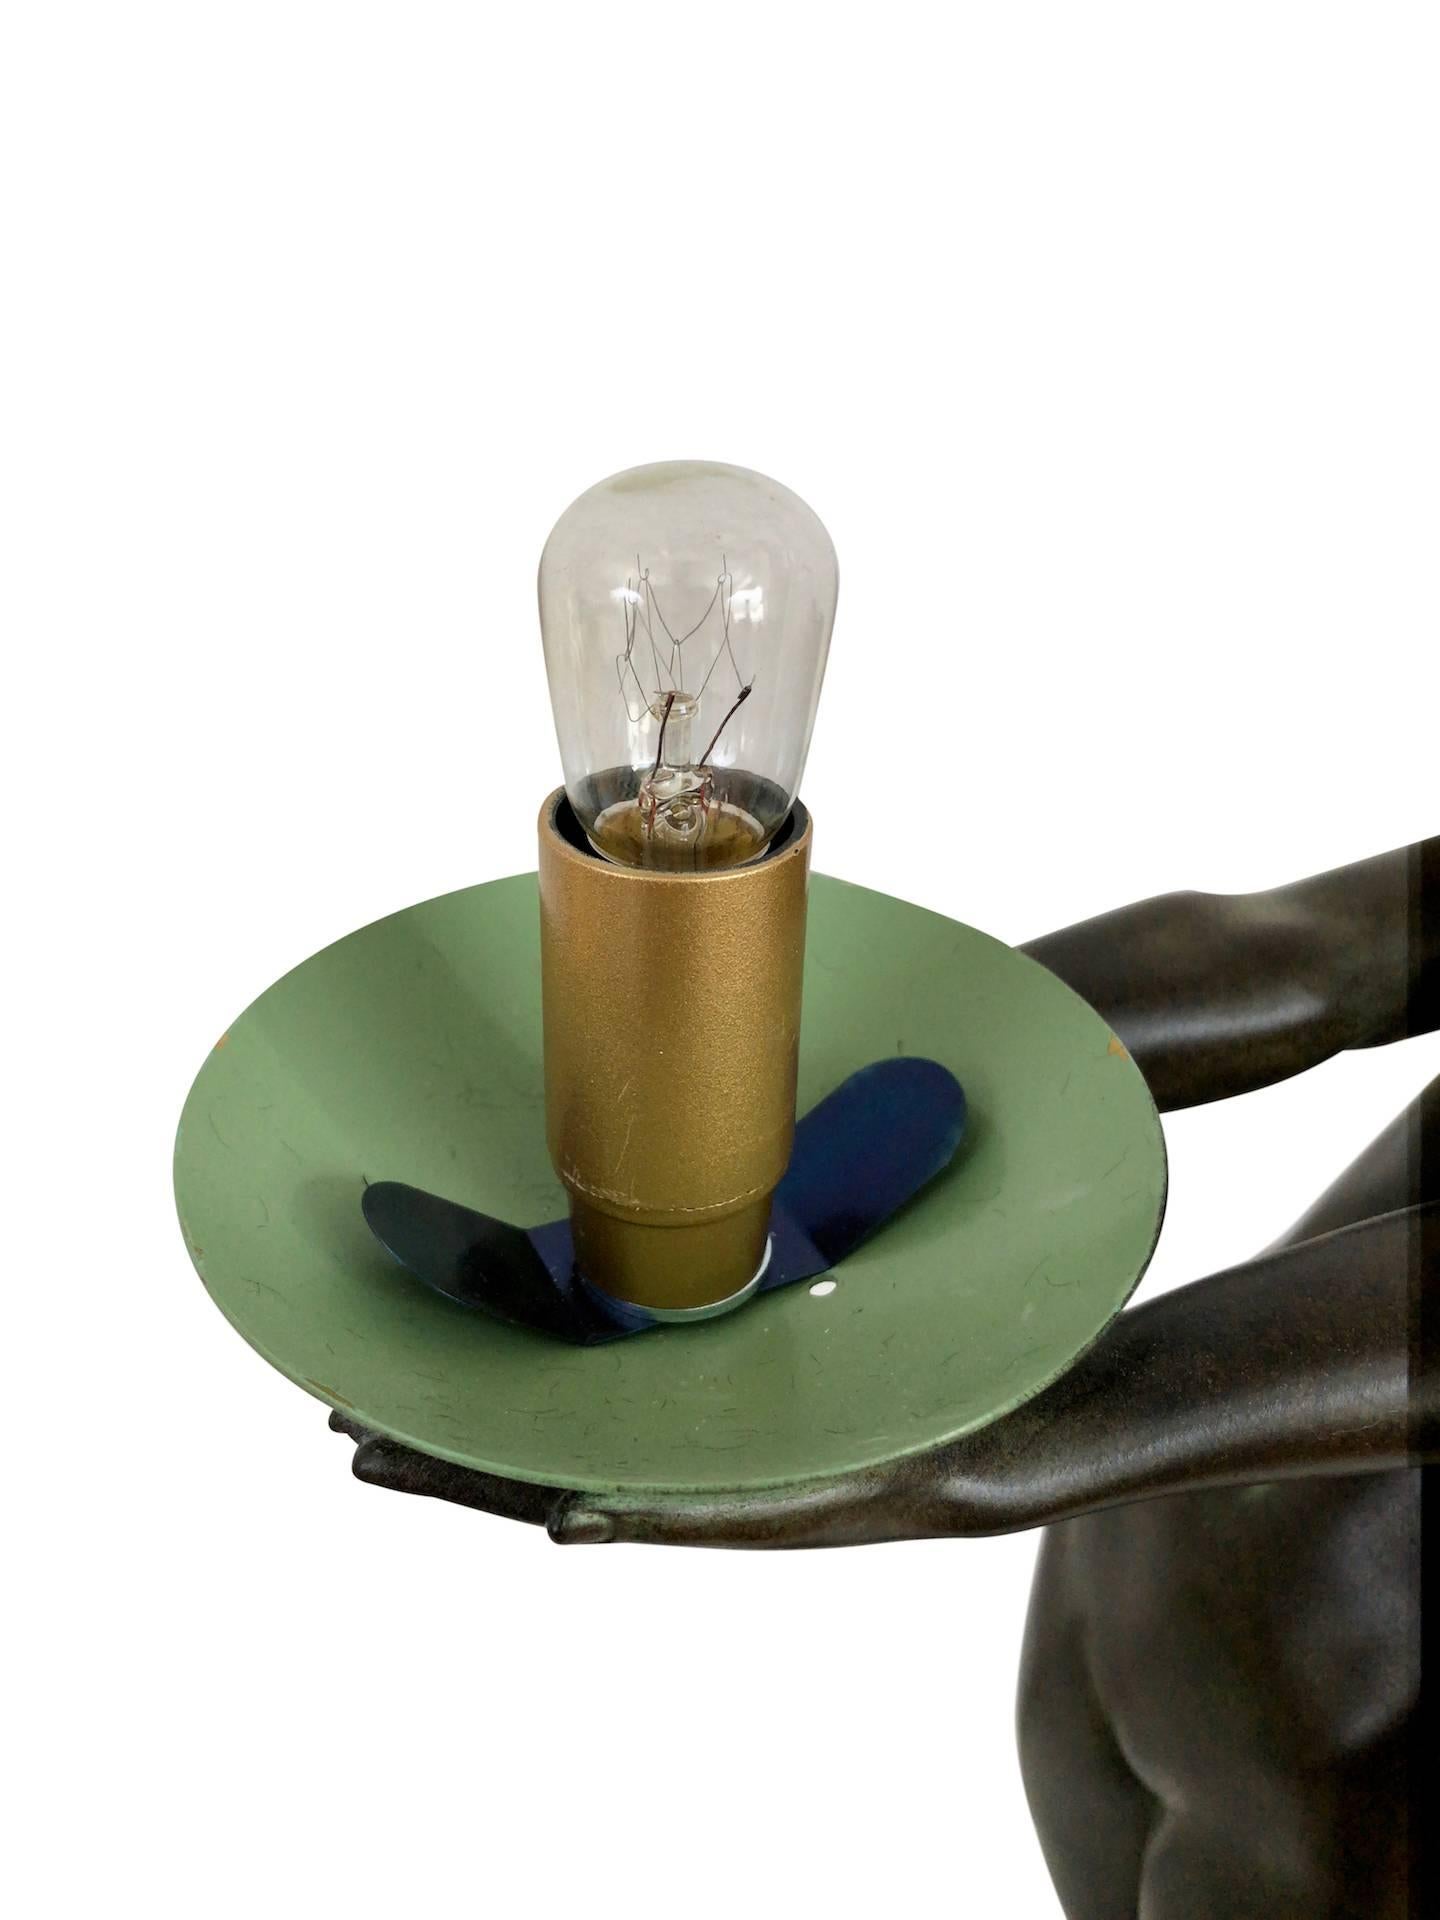 Contemporary Lumina Important Art Deco Sculpture Lamp Original Max Le Verrier